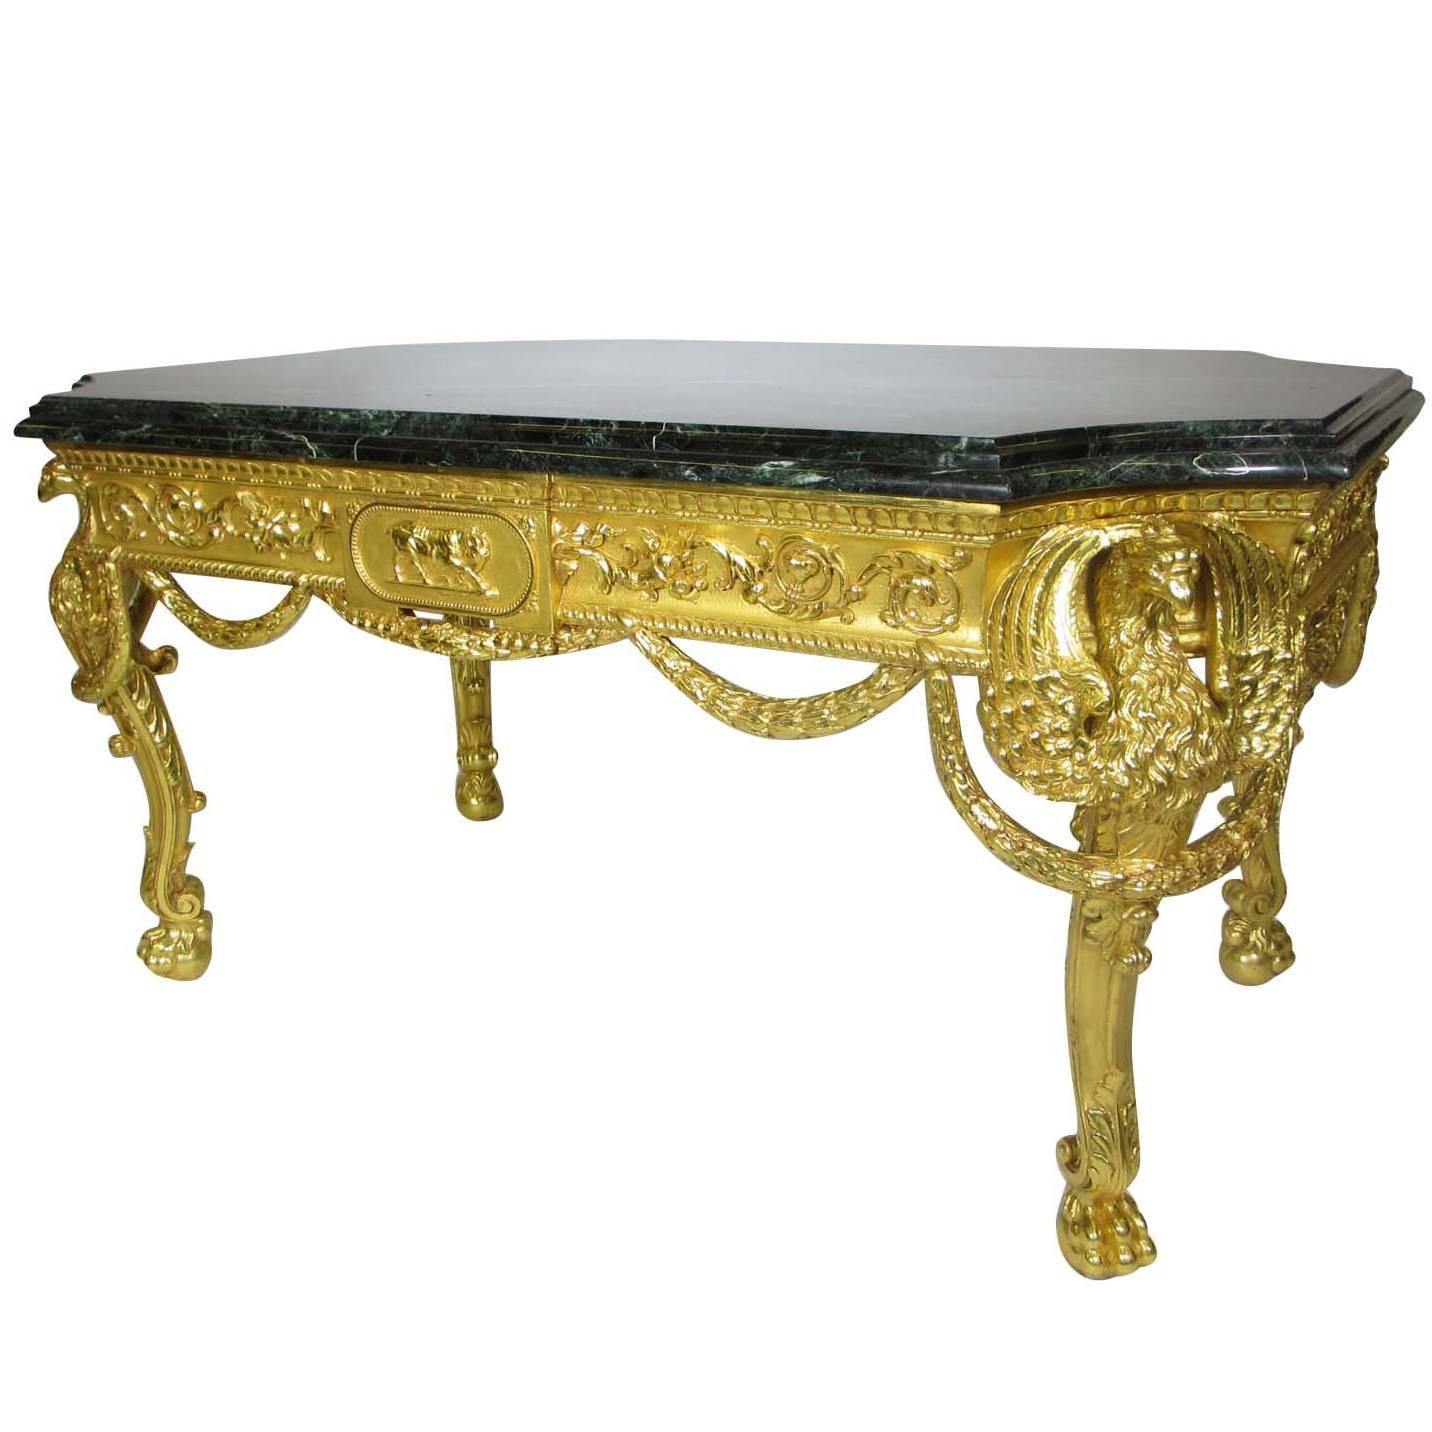 Palastische Französisch 19. Jahrhundert Empire-Stil Giltwood geschnitzt Adler Center Table